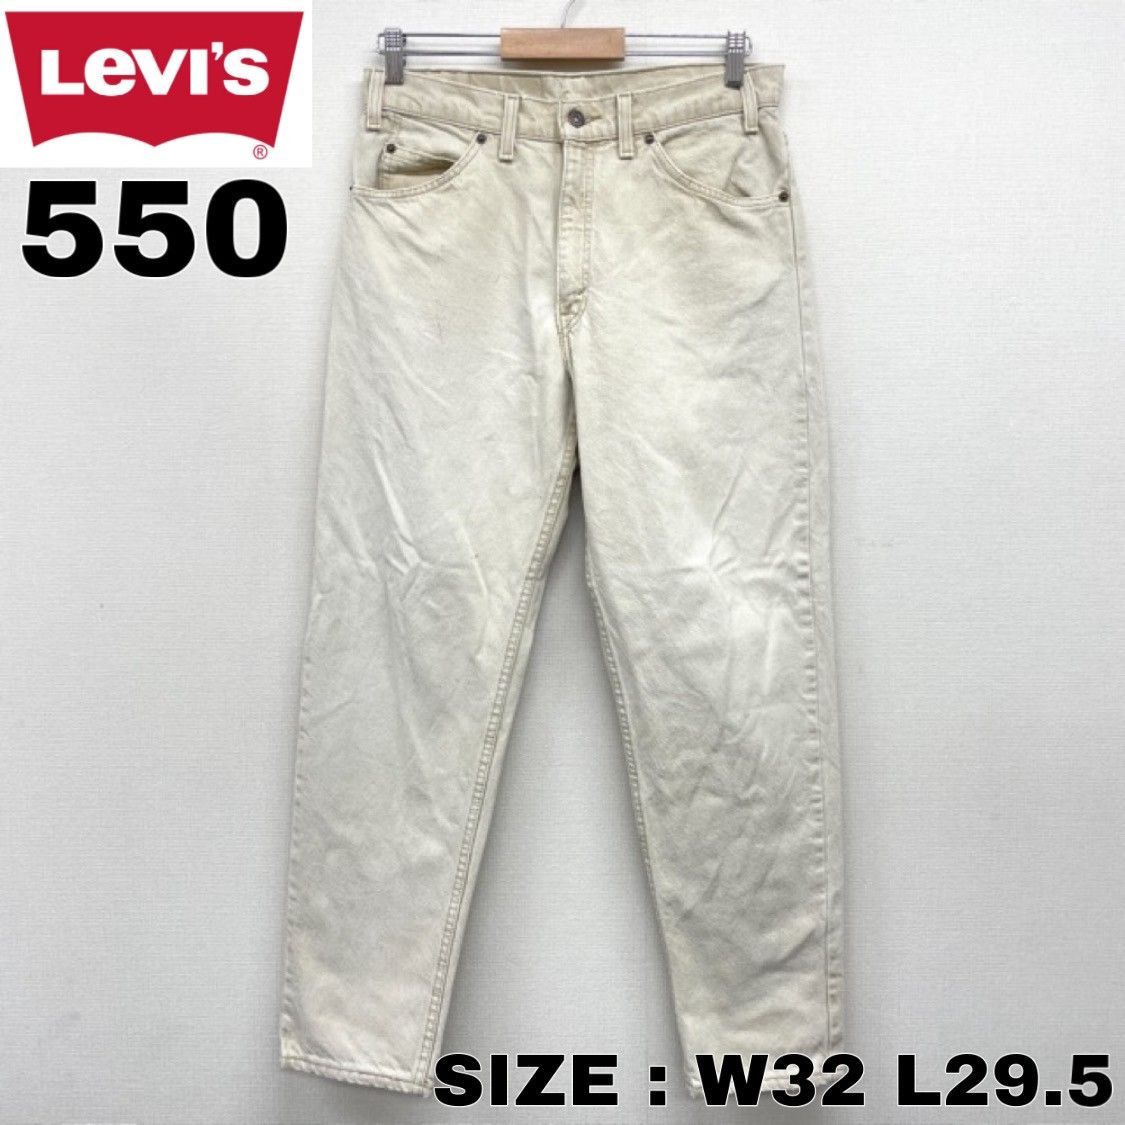 90's US古着 USA製 リーバイス Levi's 550 デニム パンツ テーパード RELAXED FIT W32 L29.5 アイボリー-0